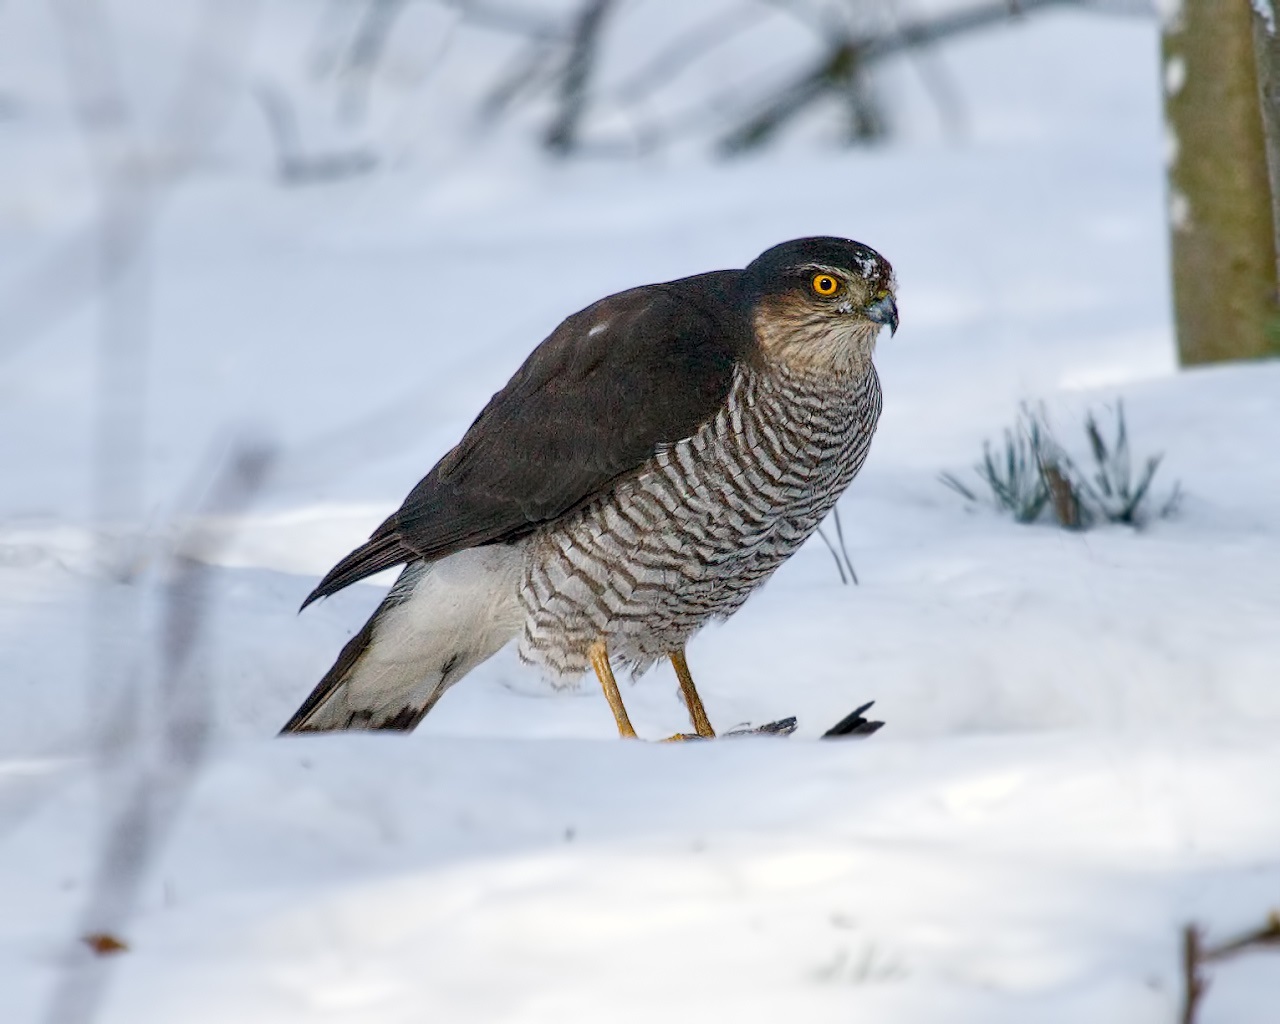 Sparrow Hawk prey on Snow